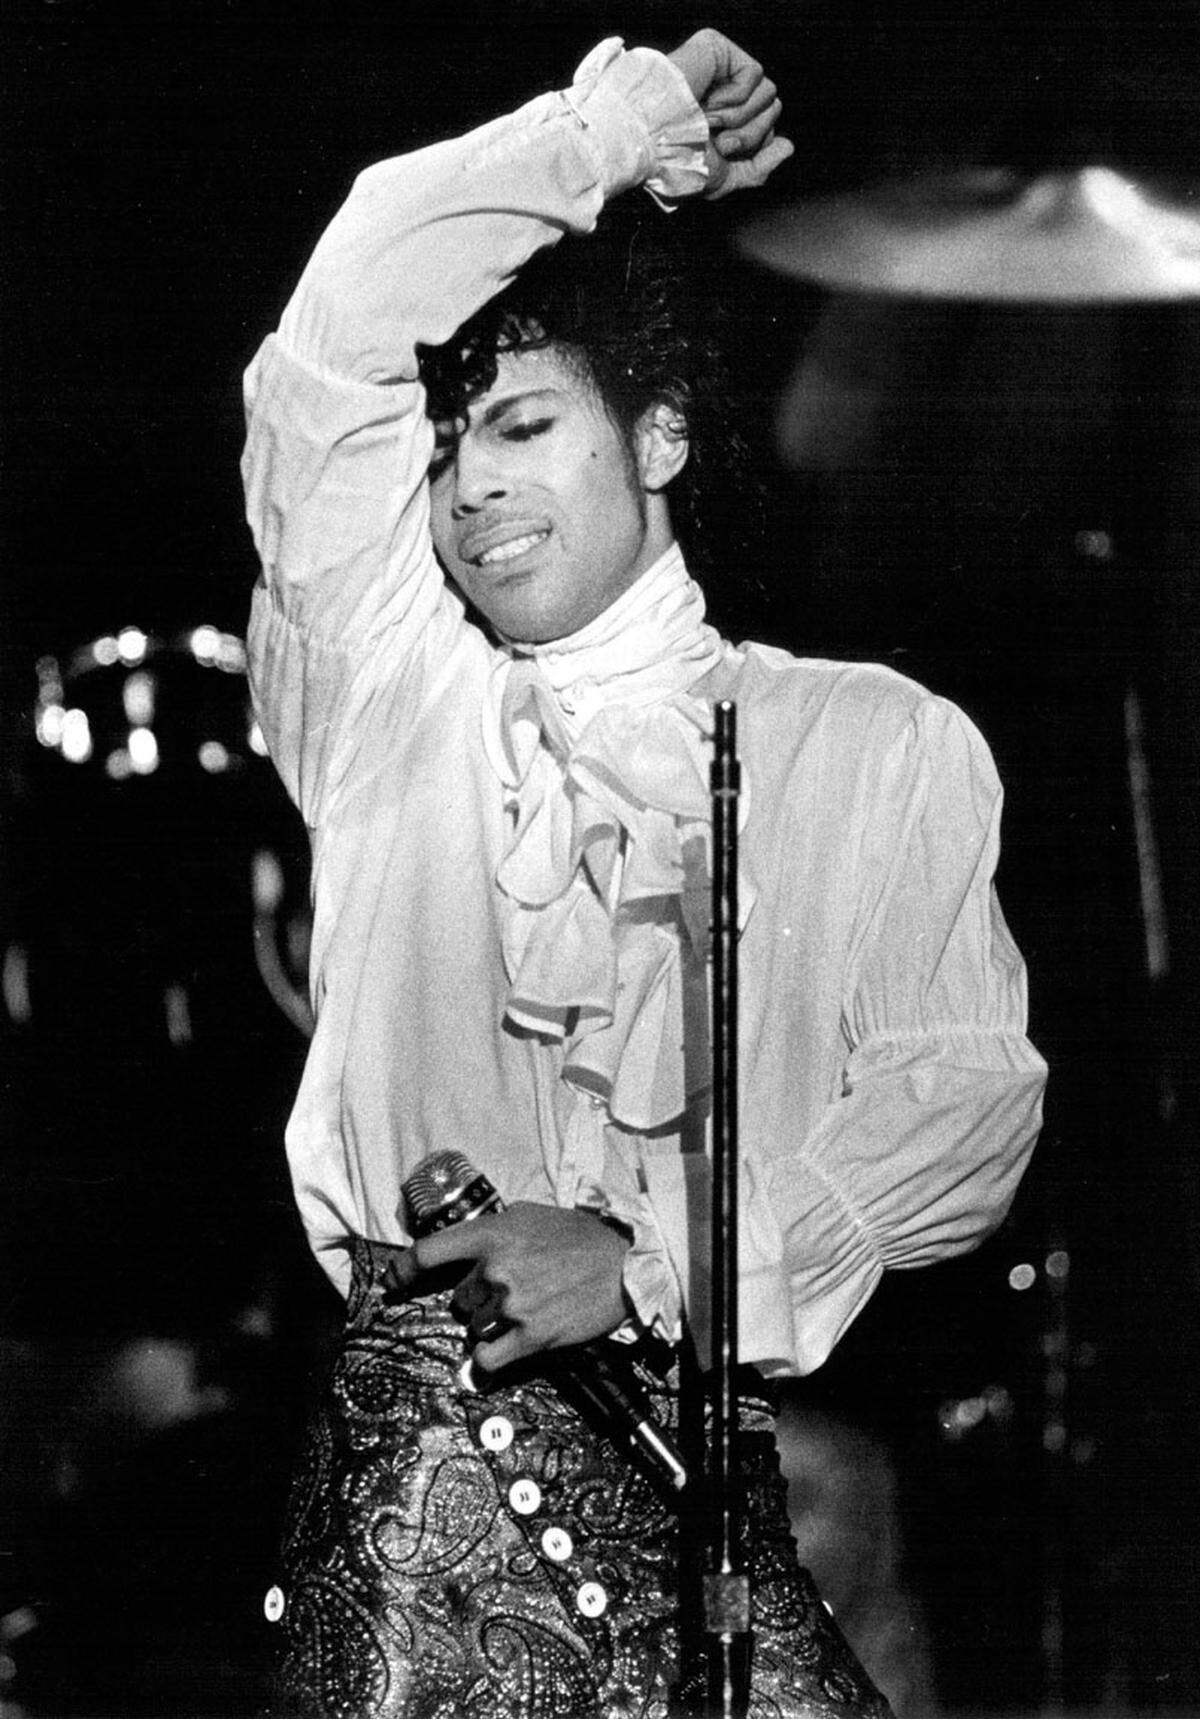 1984 schrieb Prince Musikgeschichte. Sein "Purple Rain"-Album schlug alle Rekorde, der Look dazu auch: Glitzeranzug und Rokokohemd wurden seine Markenzeichen und machten ihn schlagartig zur Modeikone.